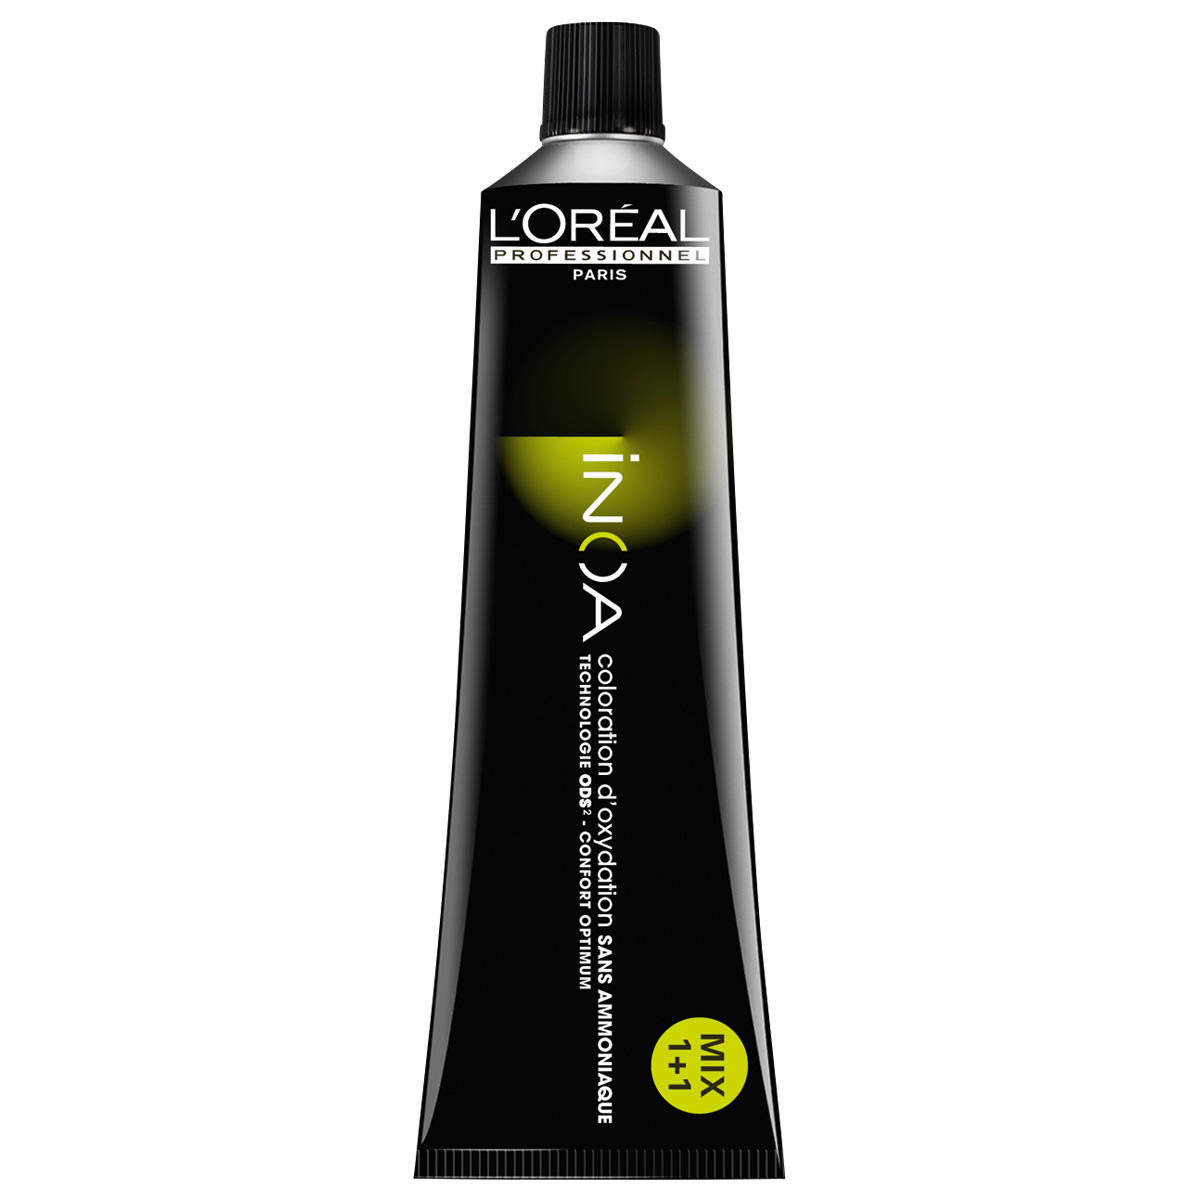 L'Oréal Professionnel Paris Coloration 7.43 Medium Blond Koper Goud, Tube 60 ml - 1